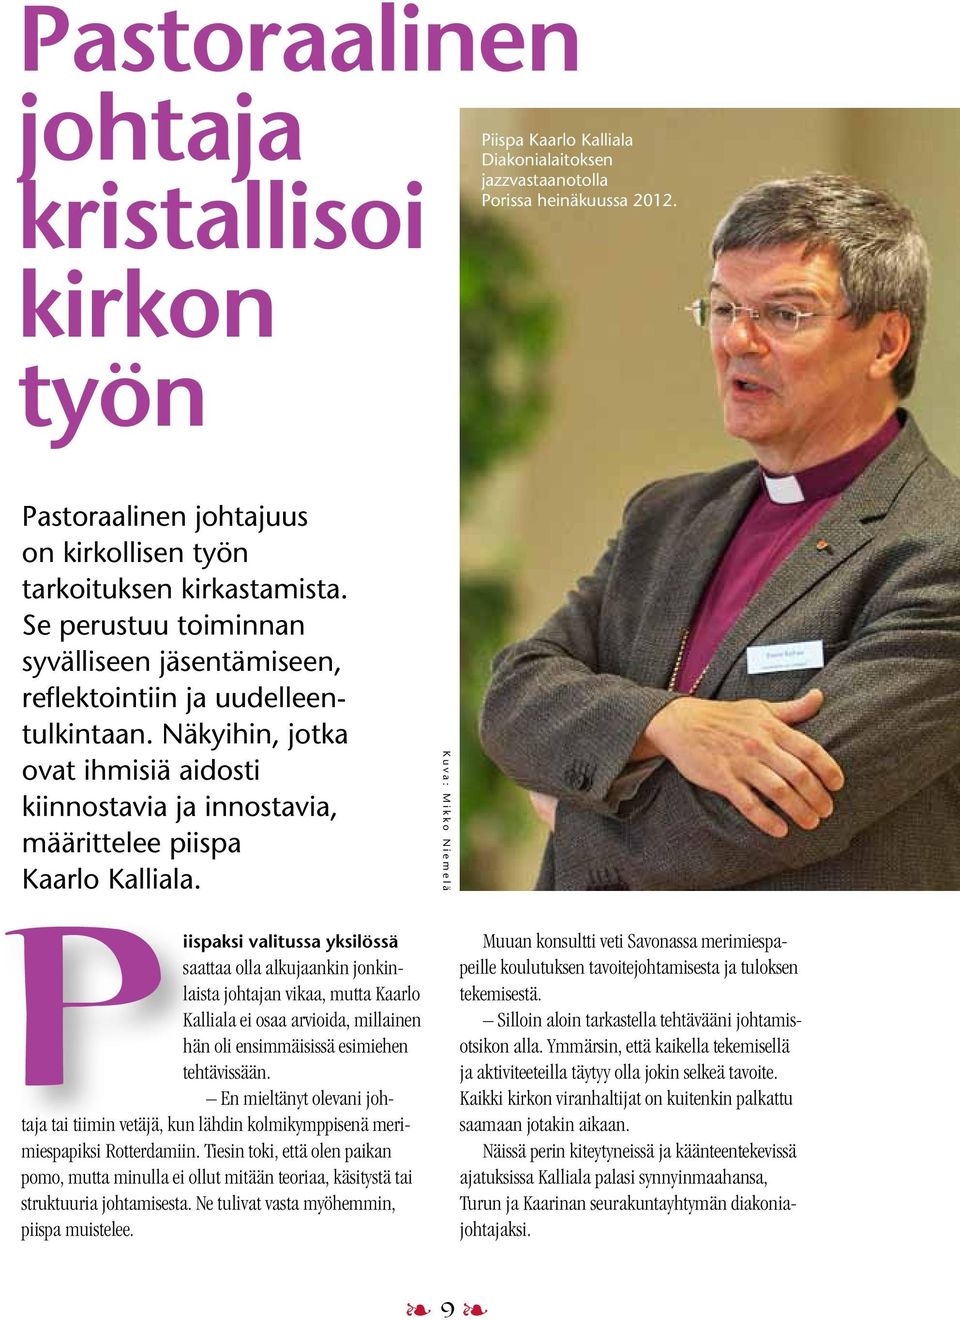 Näkyihin, jotka ovat ihmisiä aidosti kiinnostavia ja innostavia, määrittelee piispa Kaarlo Kalliala.